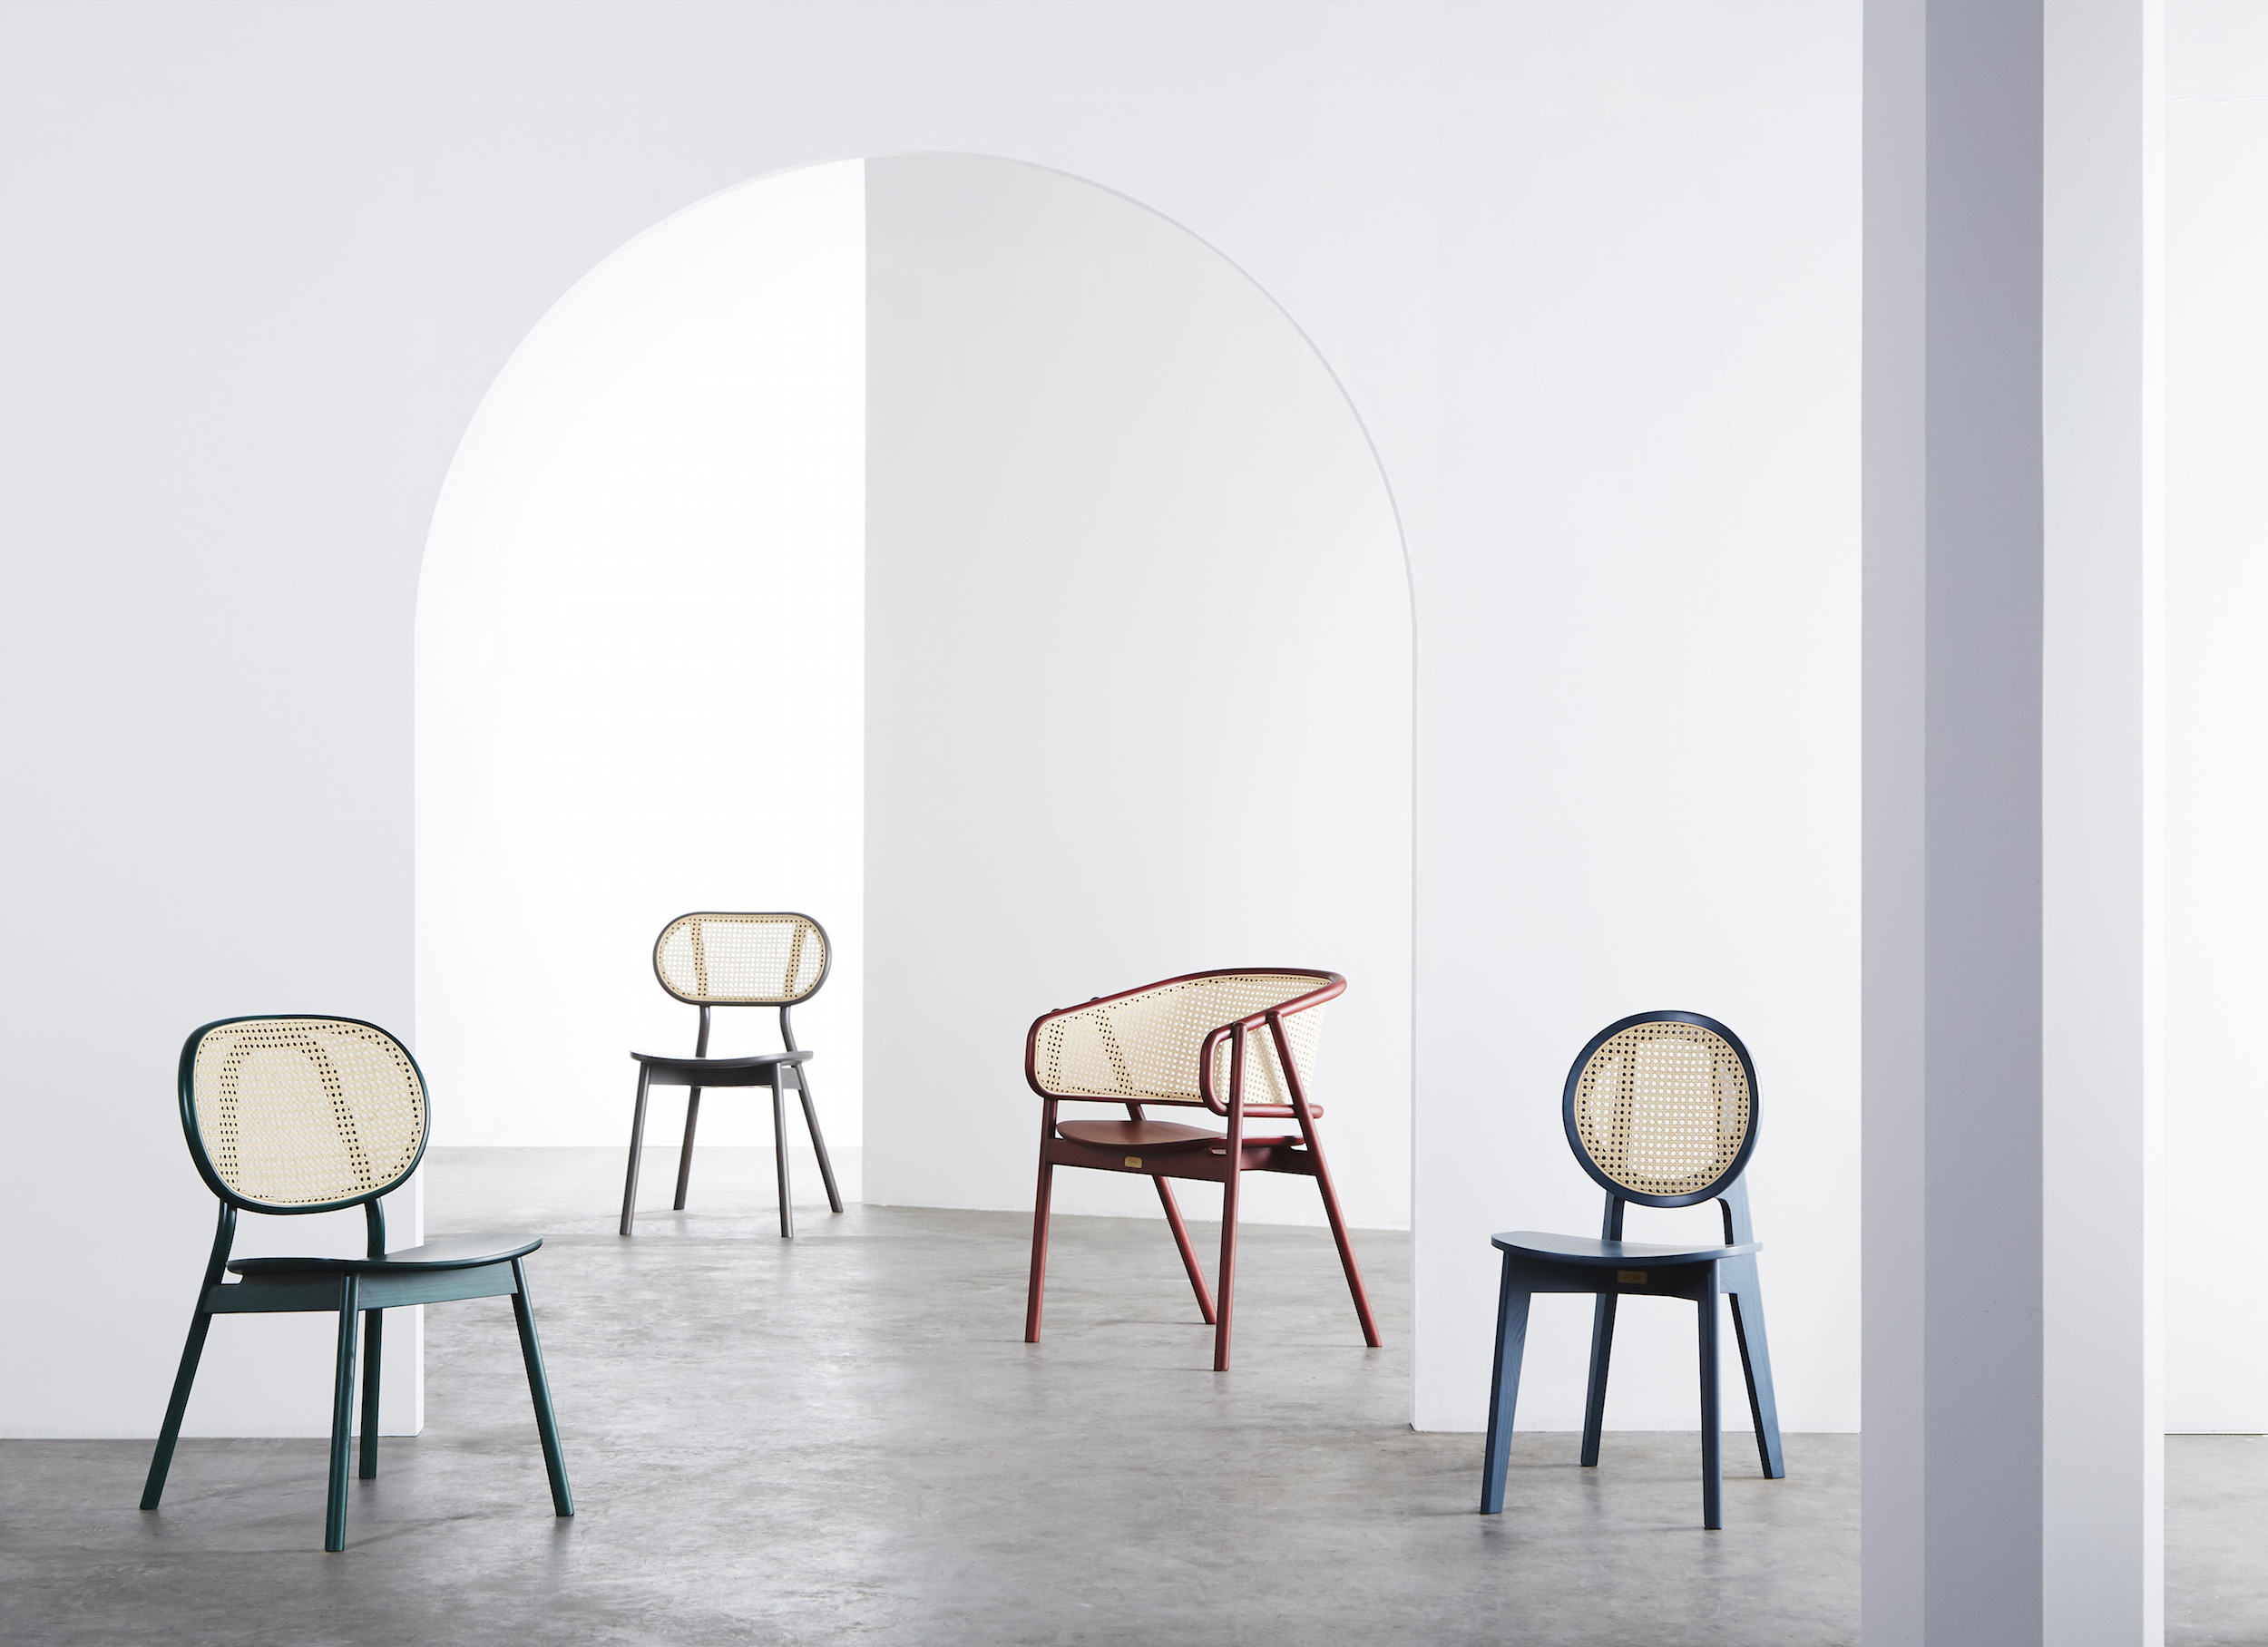   Cane Chair - 04  (Tropical Green) /  Cane Chair - 03  (Light Grey) /  Cane Armchair - 01  (Dark Red) /  Cane Chair - 02  (Ocean Blue) 